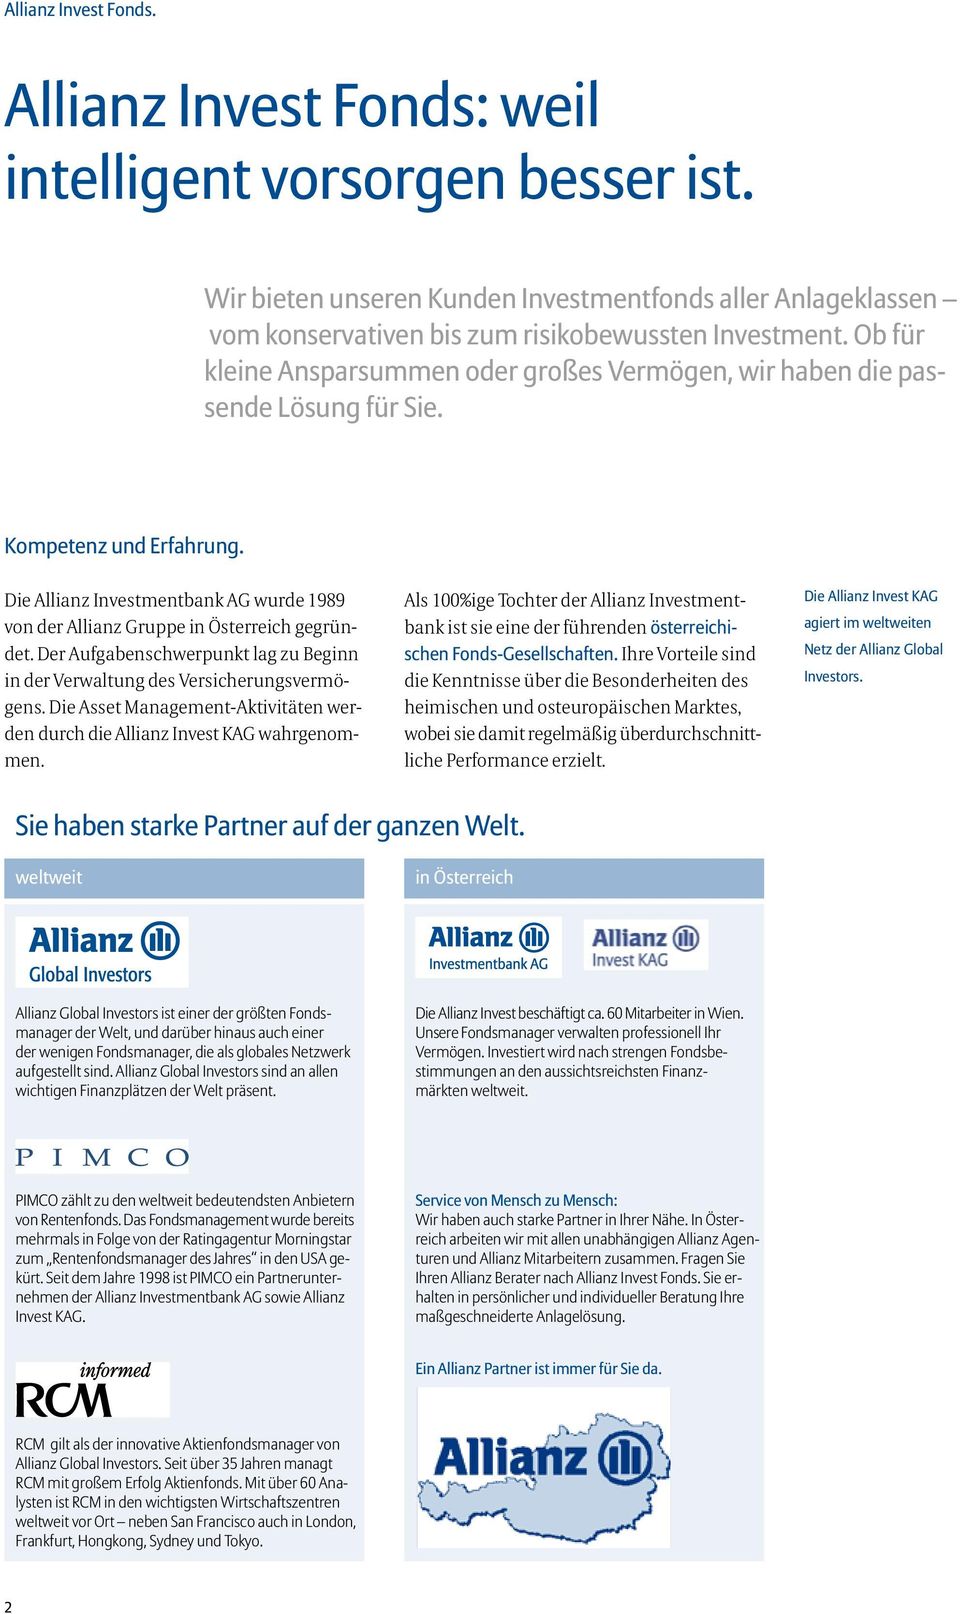 Die Allianz Investmentbank AG wurde 1989 von der Allianz Gruppe in Österreich gegründet. Der Aufgabenschwerpunkt lag zu Beginn in der Verwaltung des Versicherungsvermögens.